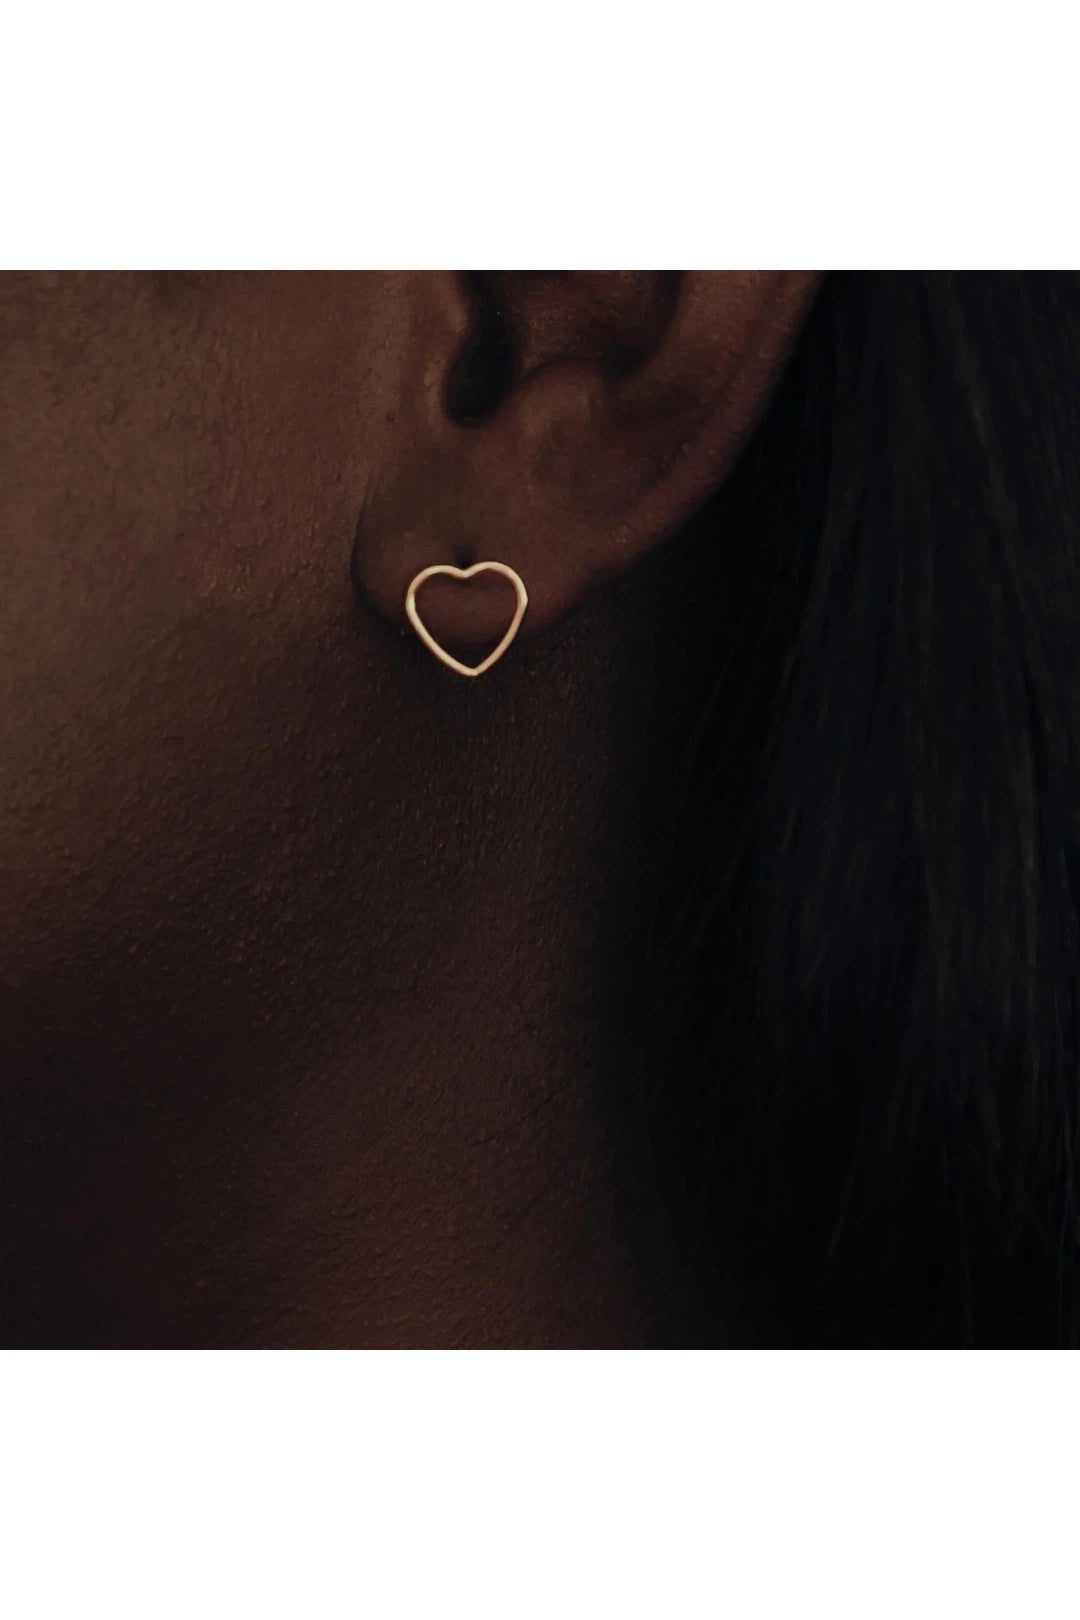 Open heart earrings, gold